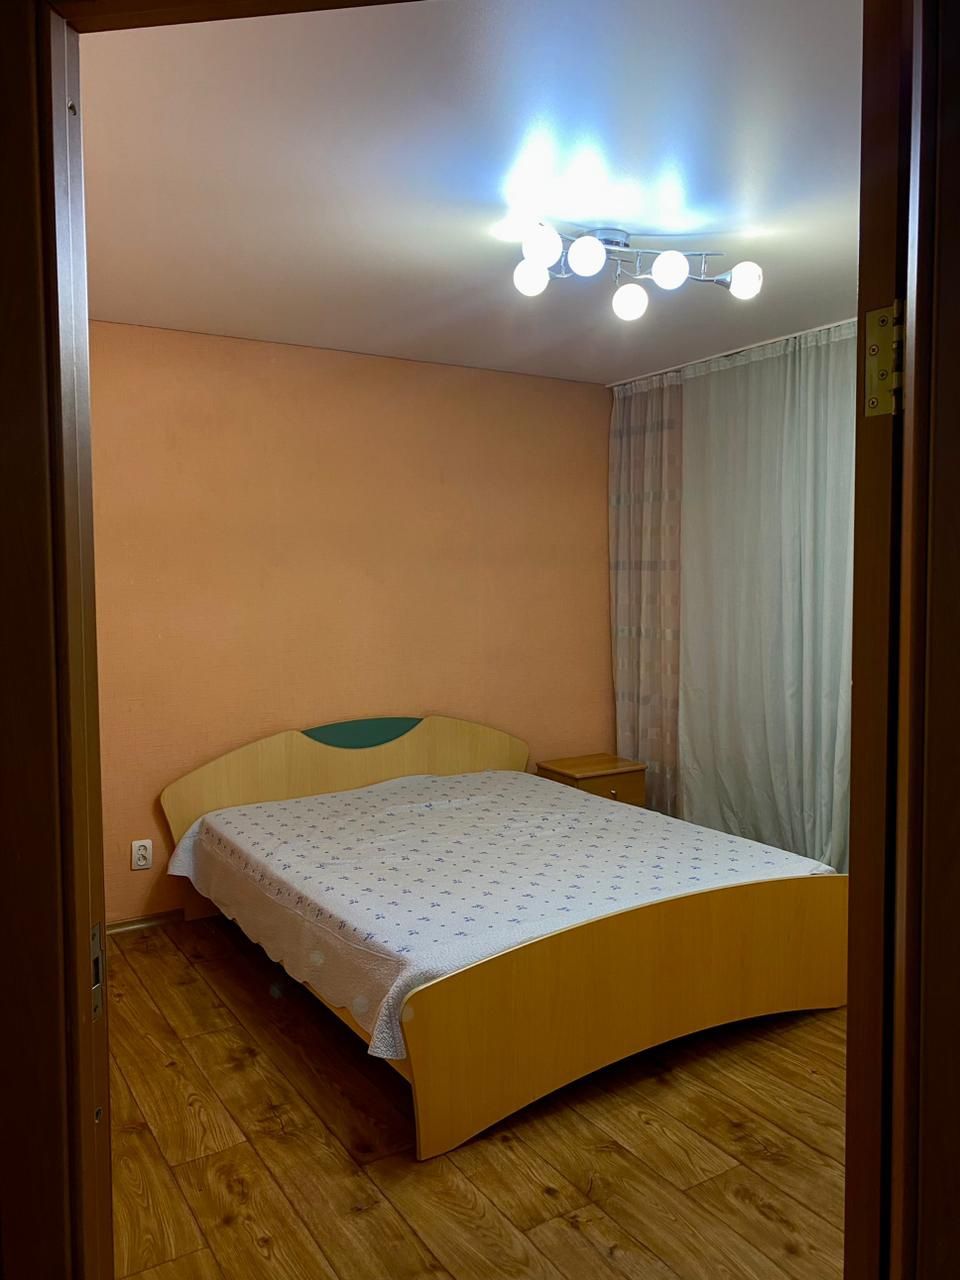 Сдам шикарные квартиры в городе щучинск 123 комнатные в центре